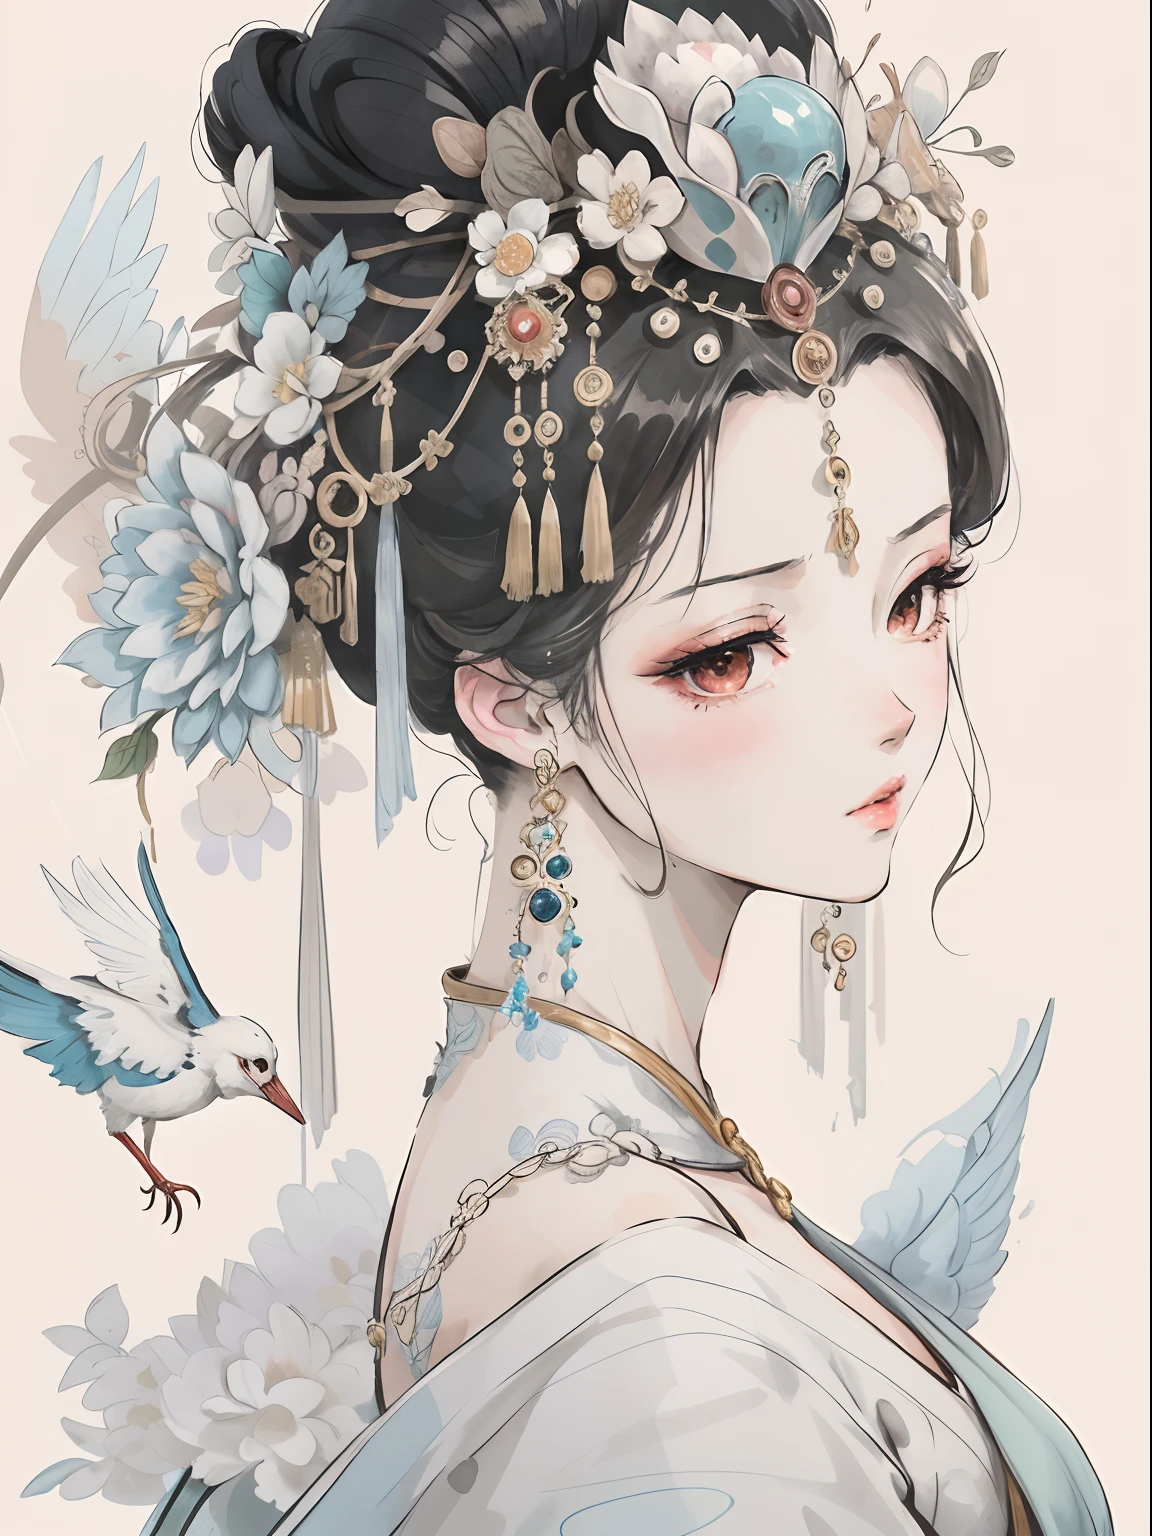 特写镜头：一位女士，头上有一只鸟和一只鸟, 宫 ， 穿汉服的女孩, 精美的数码插画, 漂亮的人物画, ((美丽的幻想皇后)), 一幅美丽的艺术插图, 美丽的幻想皇后, 古代中国艺术风格, artstration 上的热门趋势, 中国古代公主, 中国公主, 令人惊叹的艺术风格, 美丽的数码插图